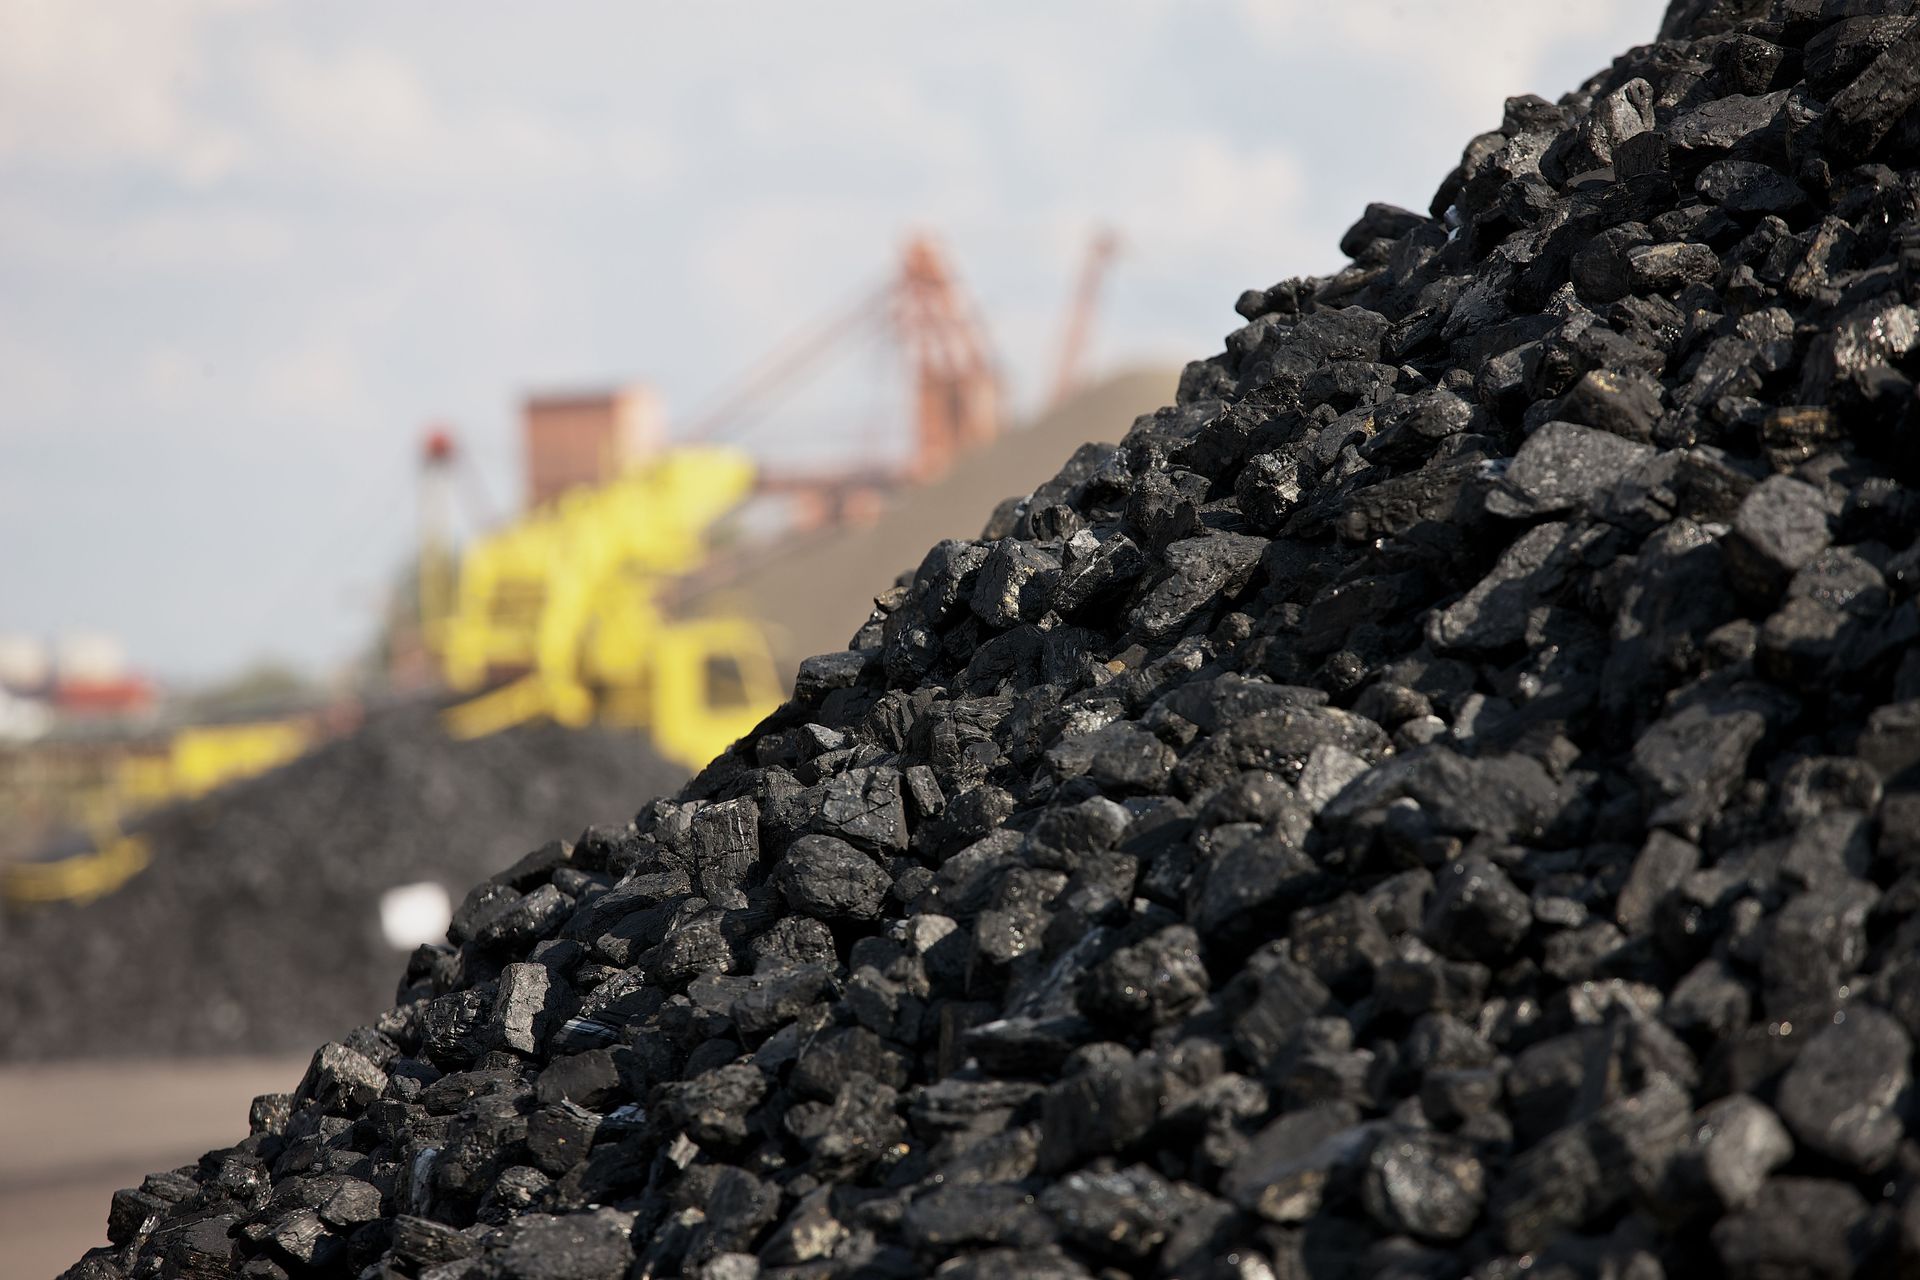 Росрезерв дополнительно предоставит уголь для нужд Нерюнгринской ГРЭС